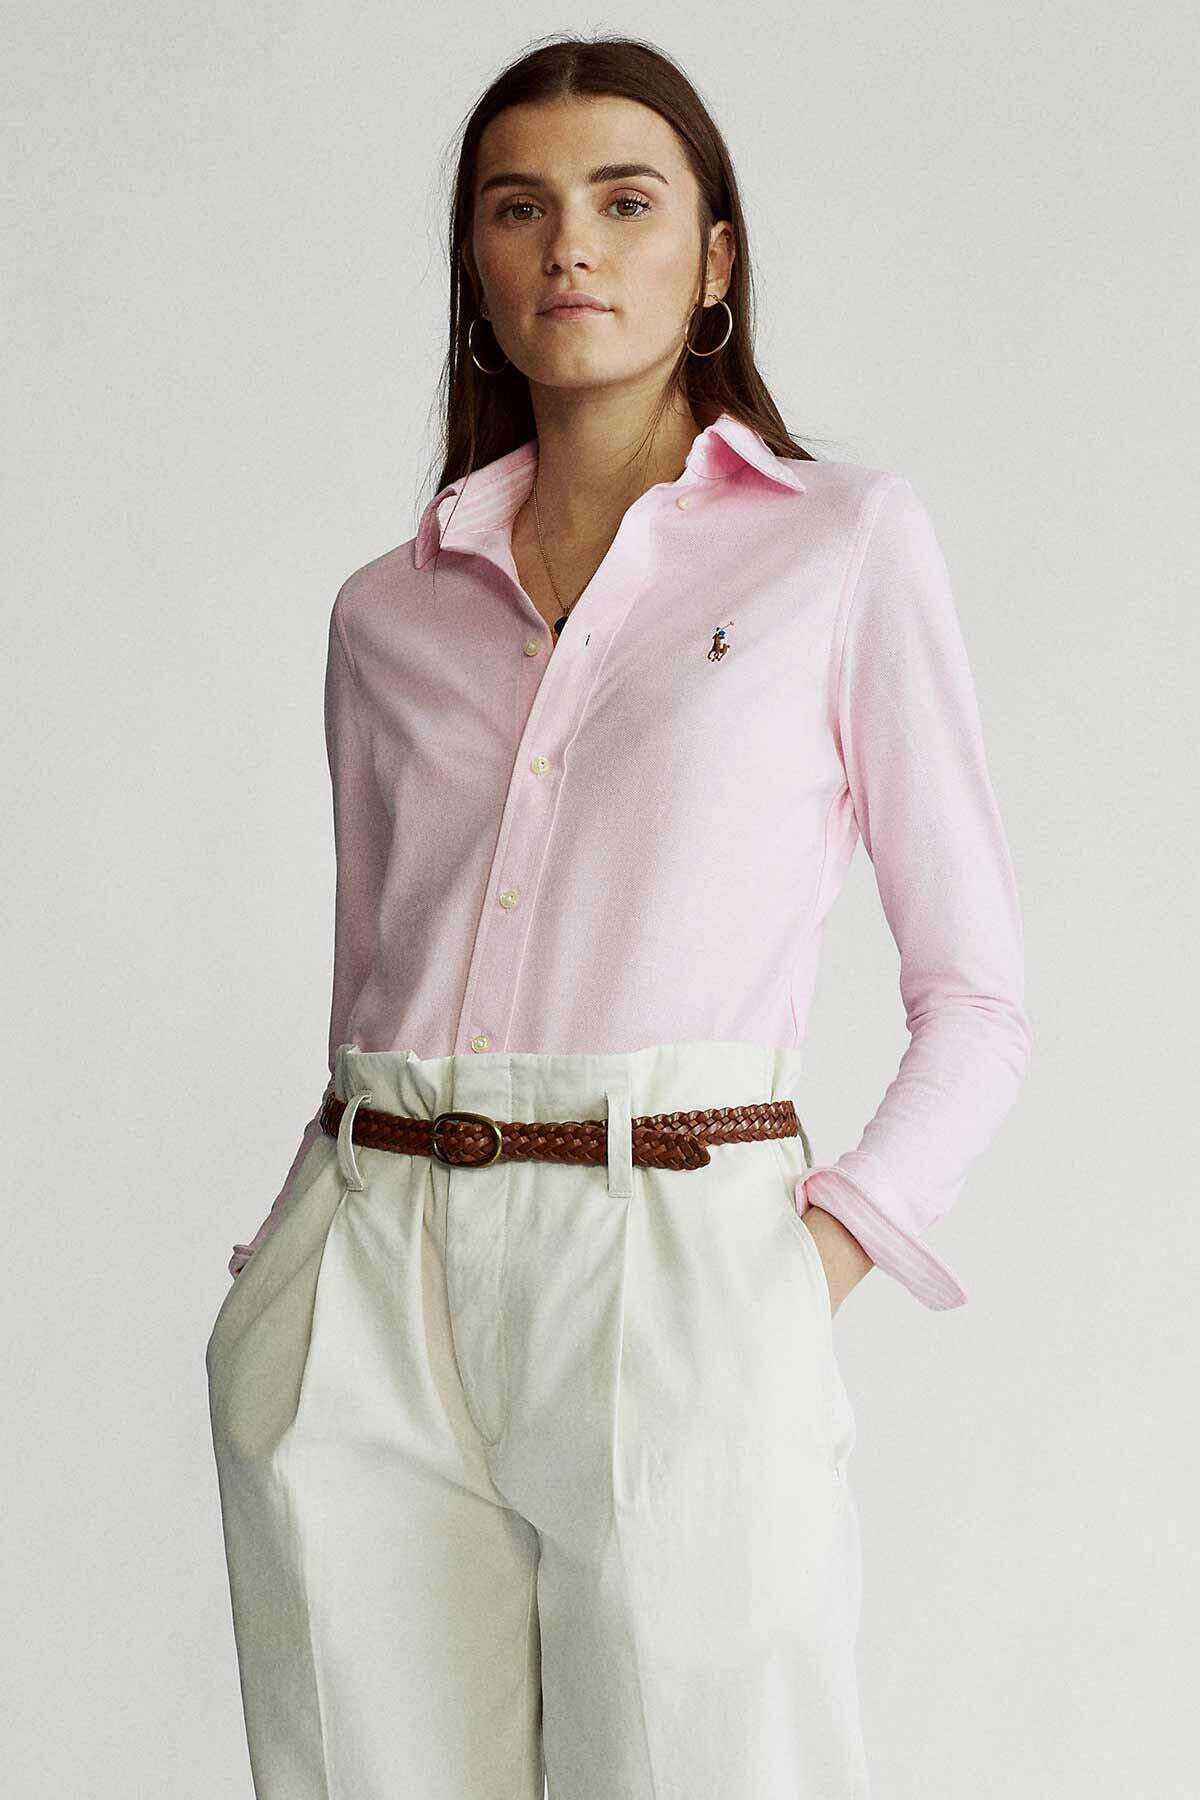 پیراهن آکسفورد زنانه یقه کلاسیک صورتی برند Polo 